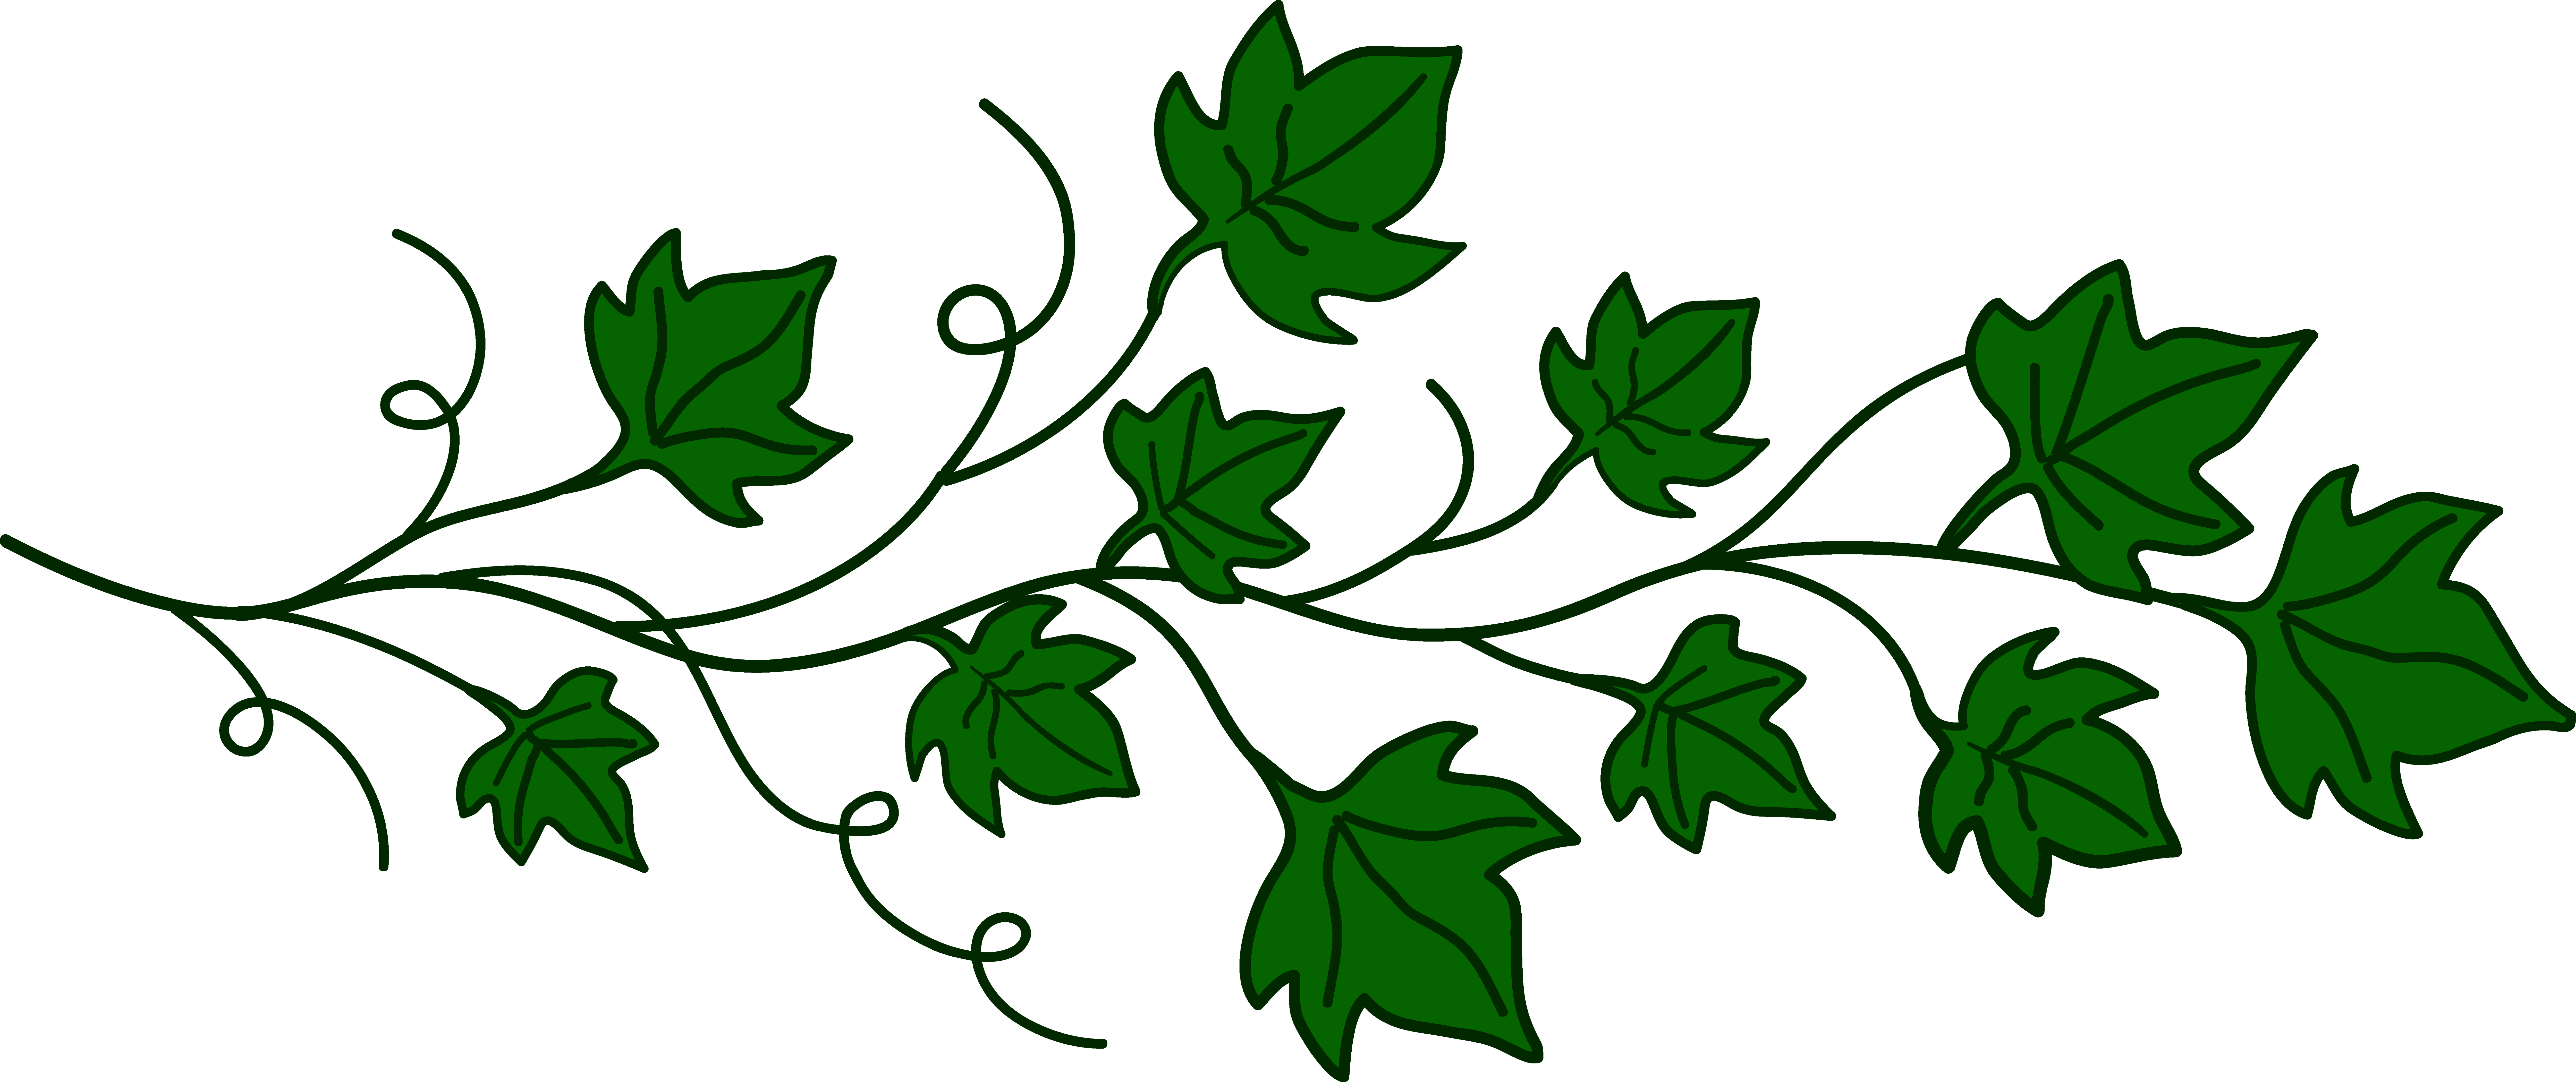 Ivy Leaf Drawing at GetDrawings Free download